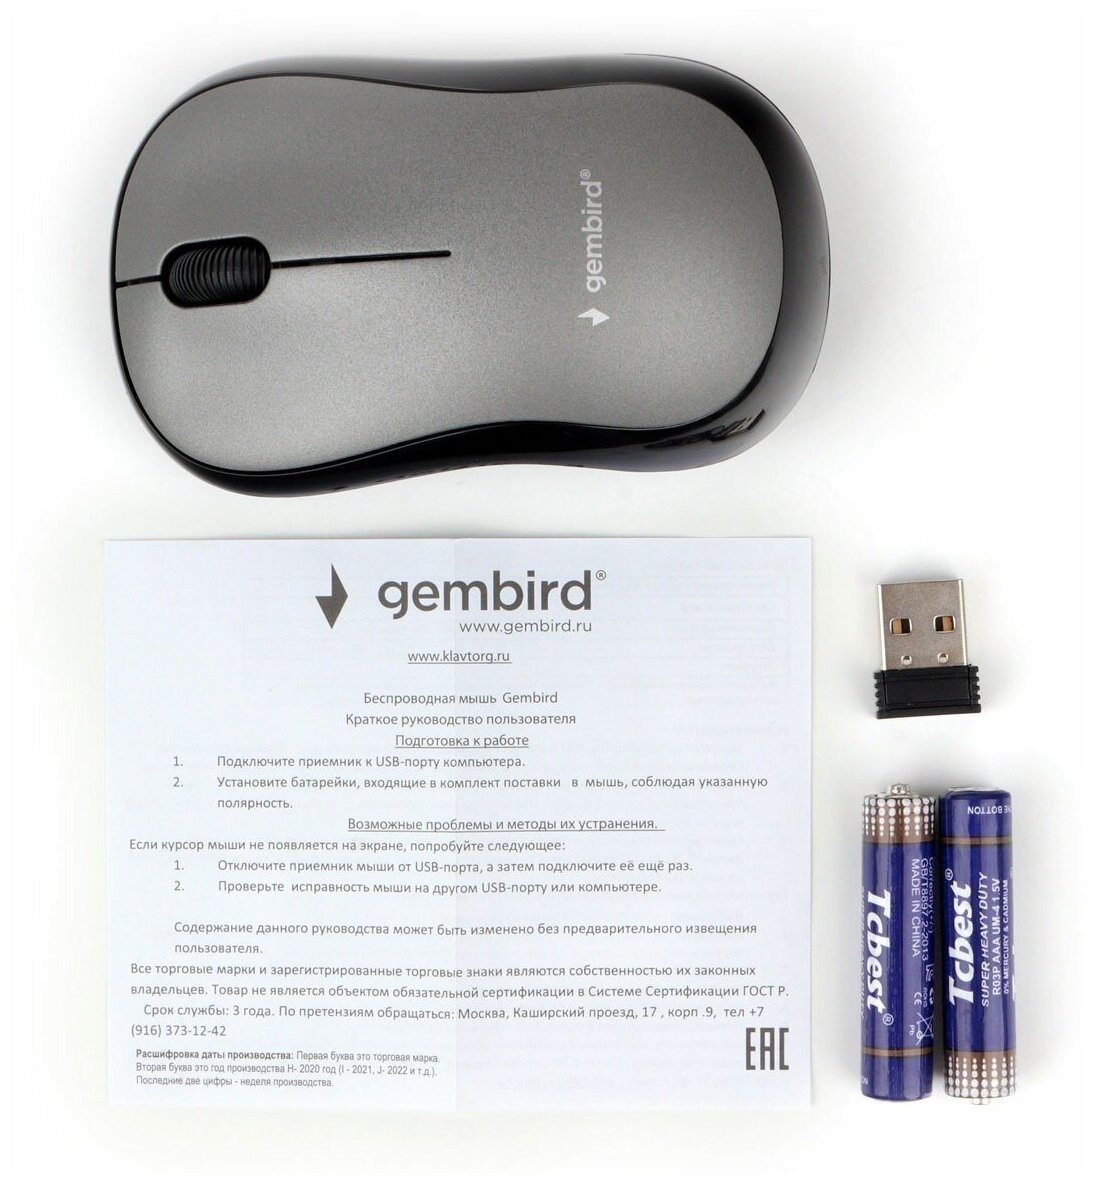 Мышь Wireless Gembird - фото №3